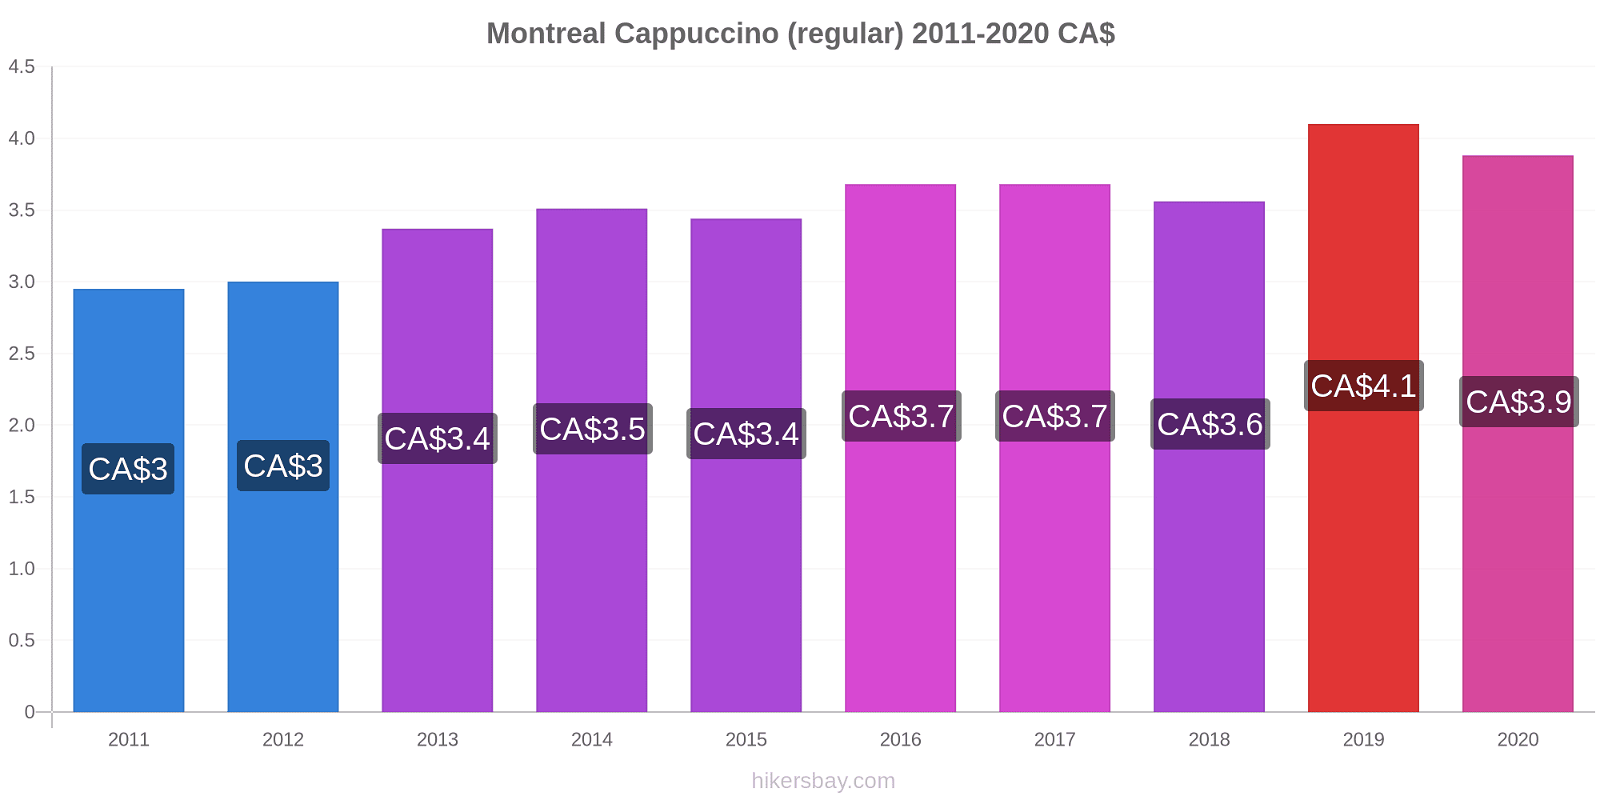 Montreal price changes Cappuccino (regular) hikersbay.com